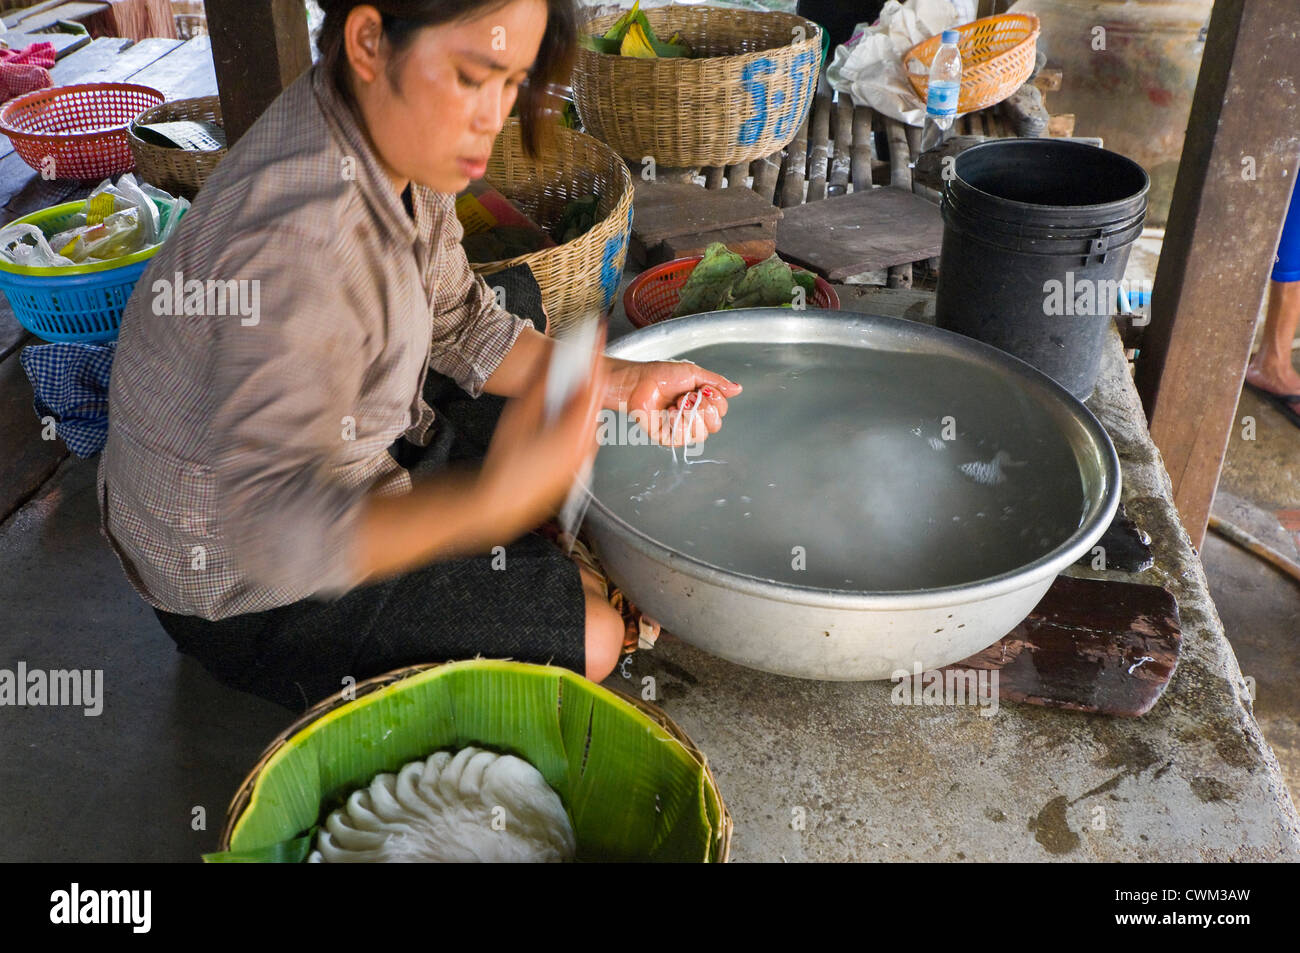 Chiudere orizzontale su ritratto di una donna cambogiana rendendo riso tagliatelle, kh'teaw, nei dintorni di base. Foto Stock